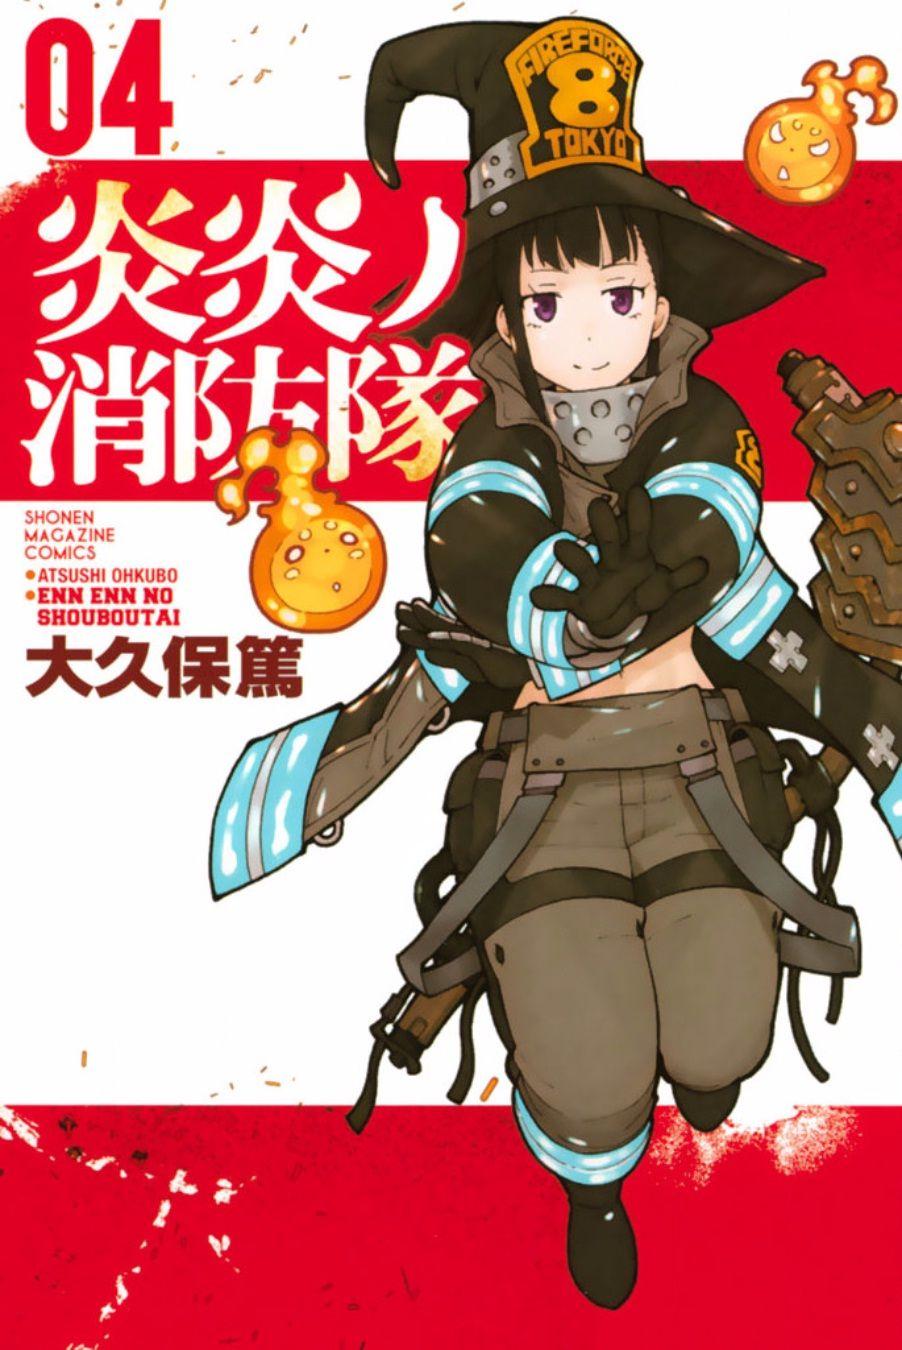 Maki Oze. Manga covers, Manga, Comics